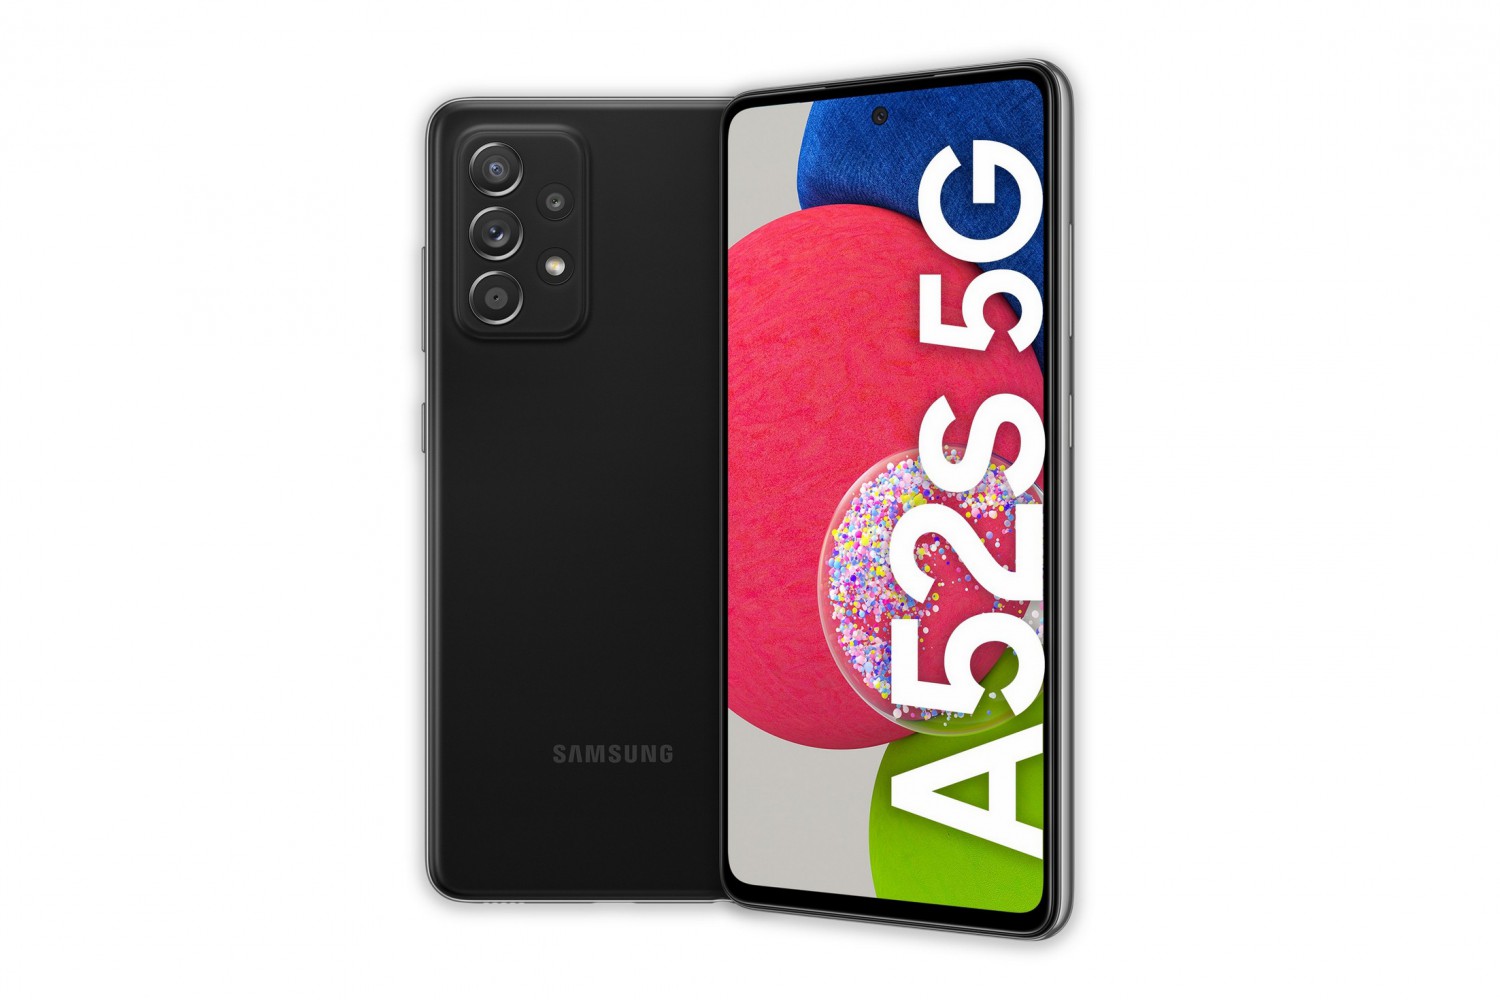 Samsung Galaxy A52s 5G SM-A528 Black 6+128GB